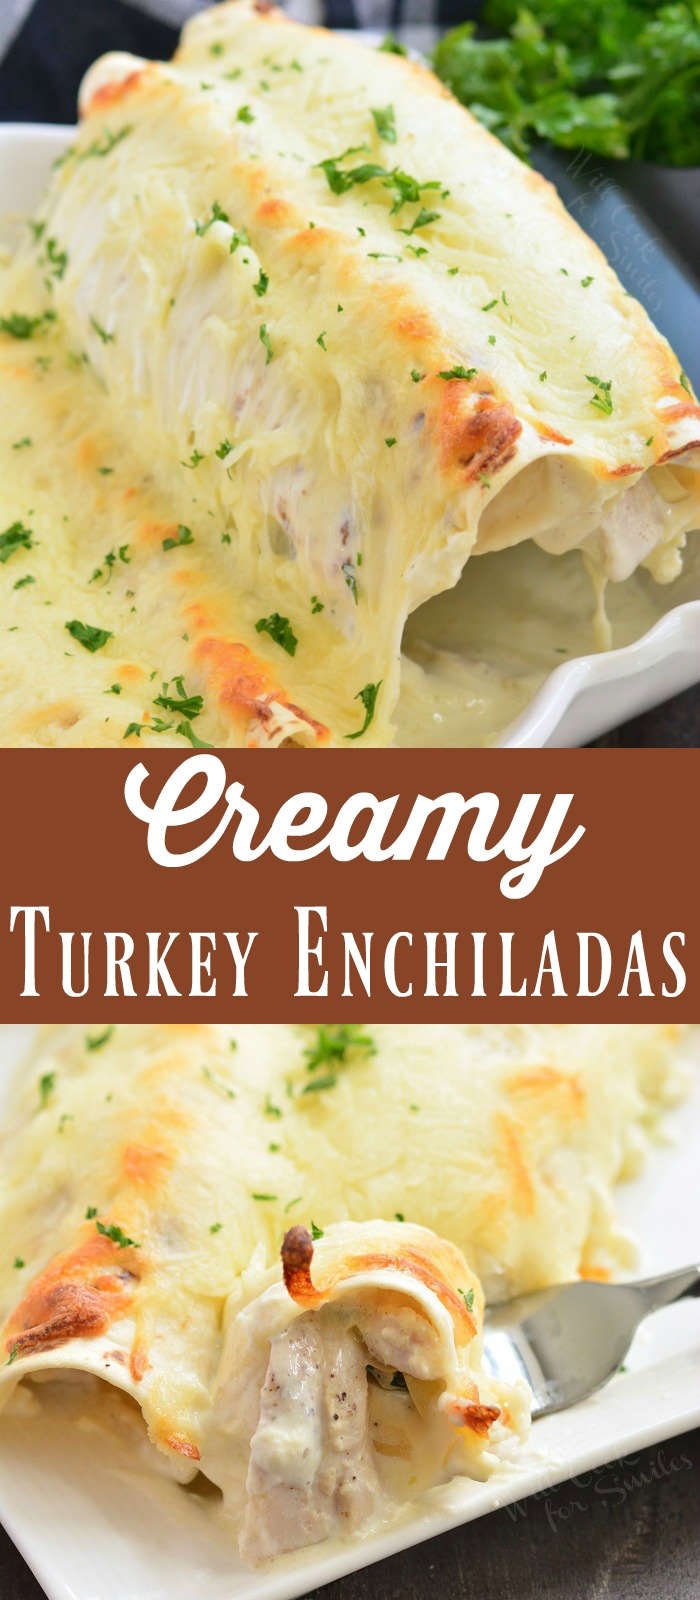 turkey enchiladas collage